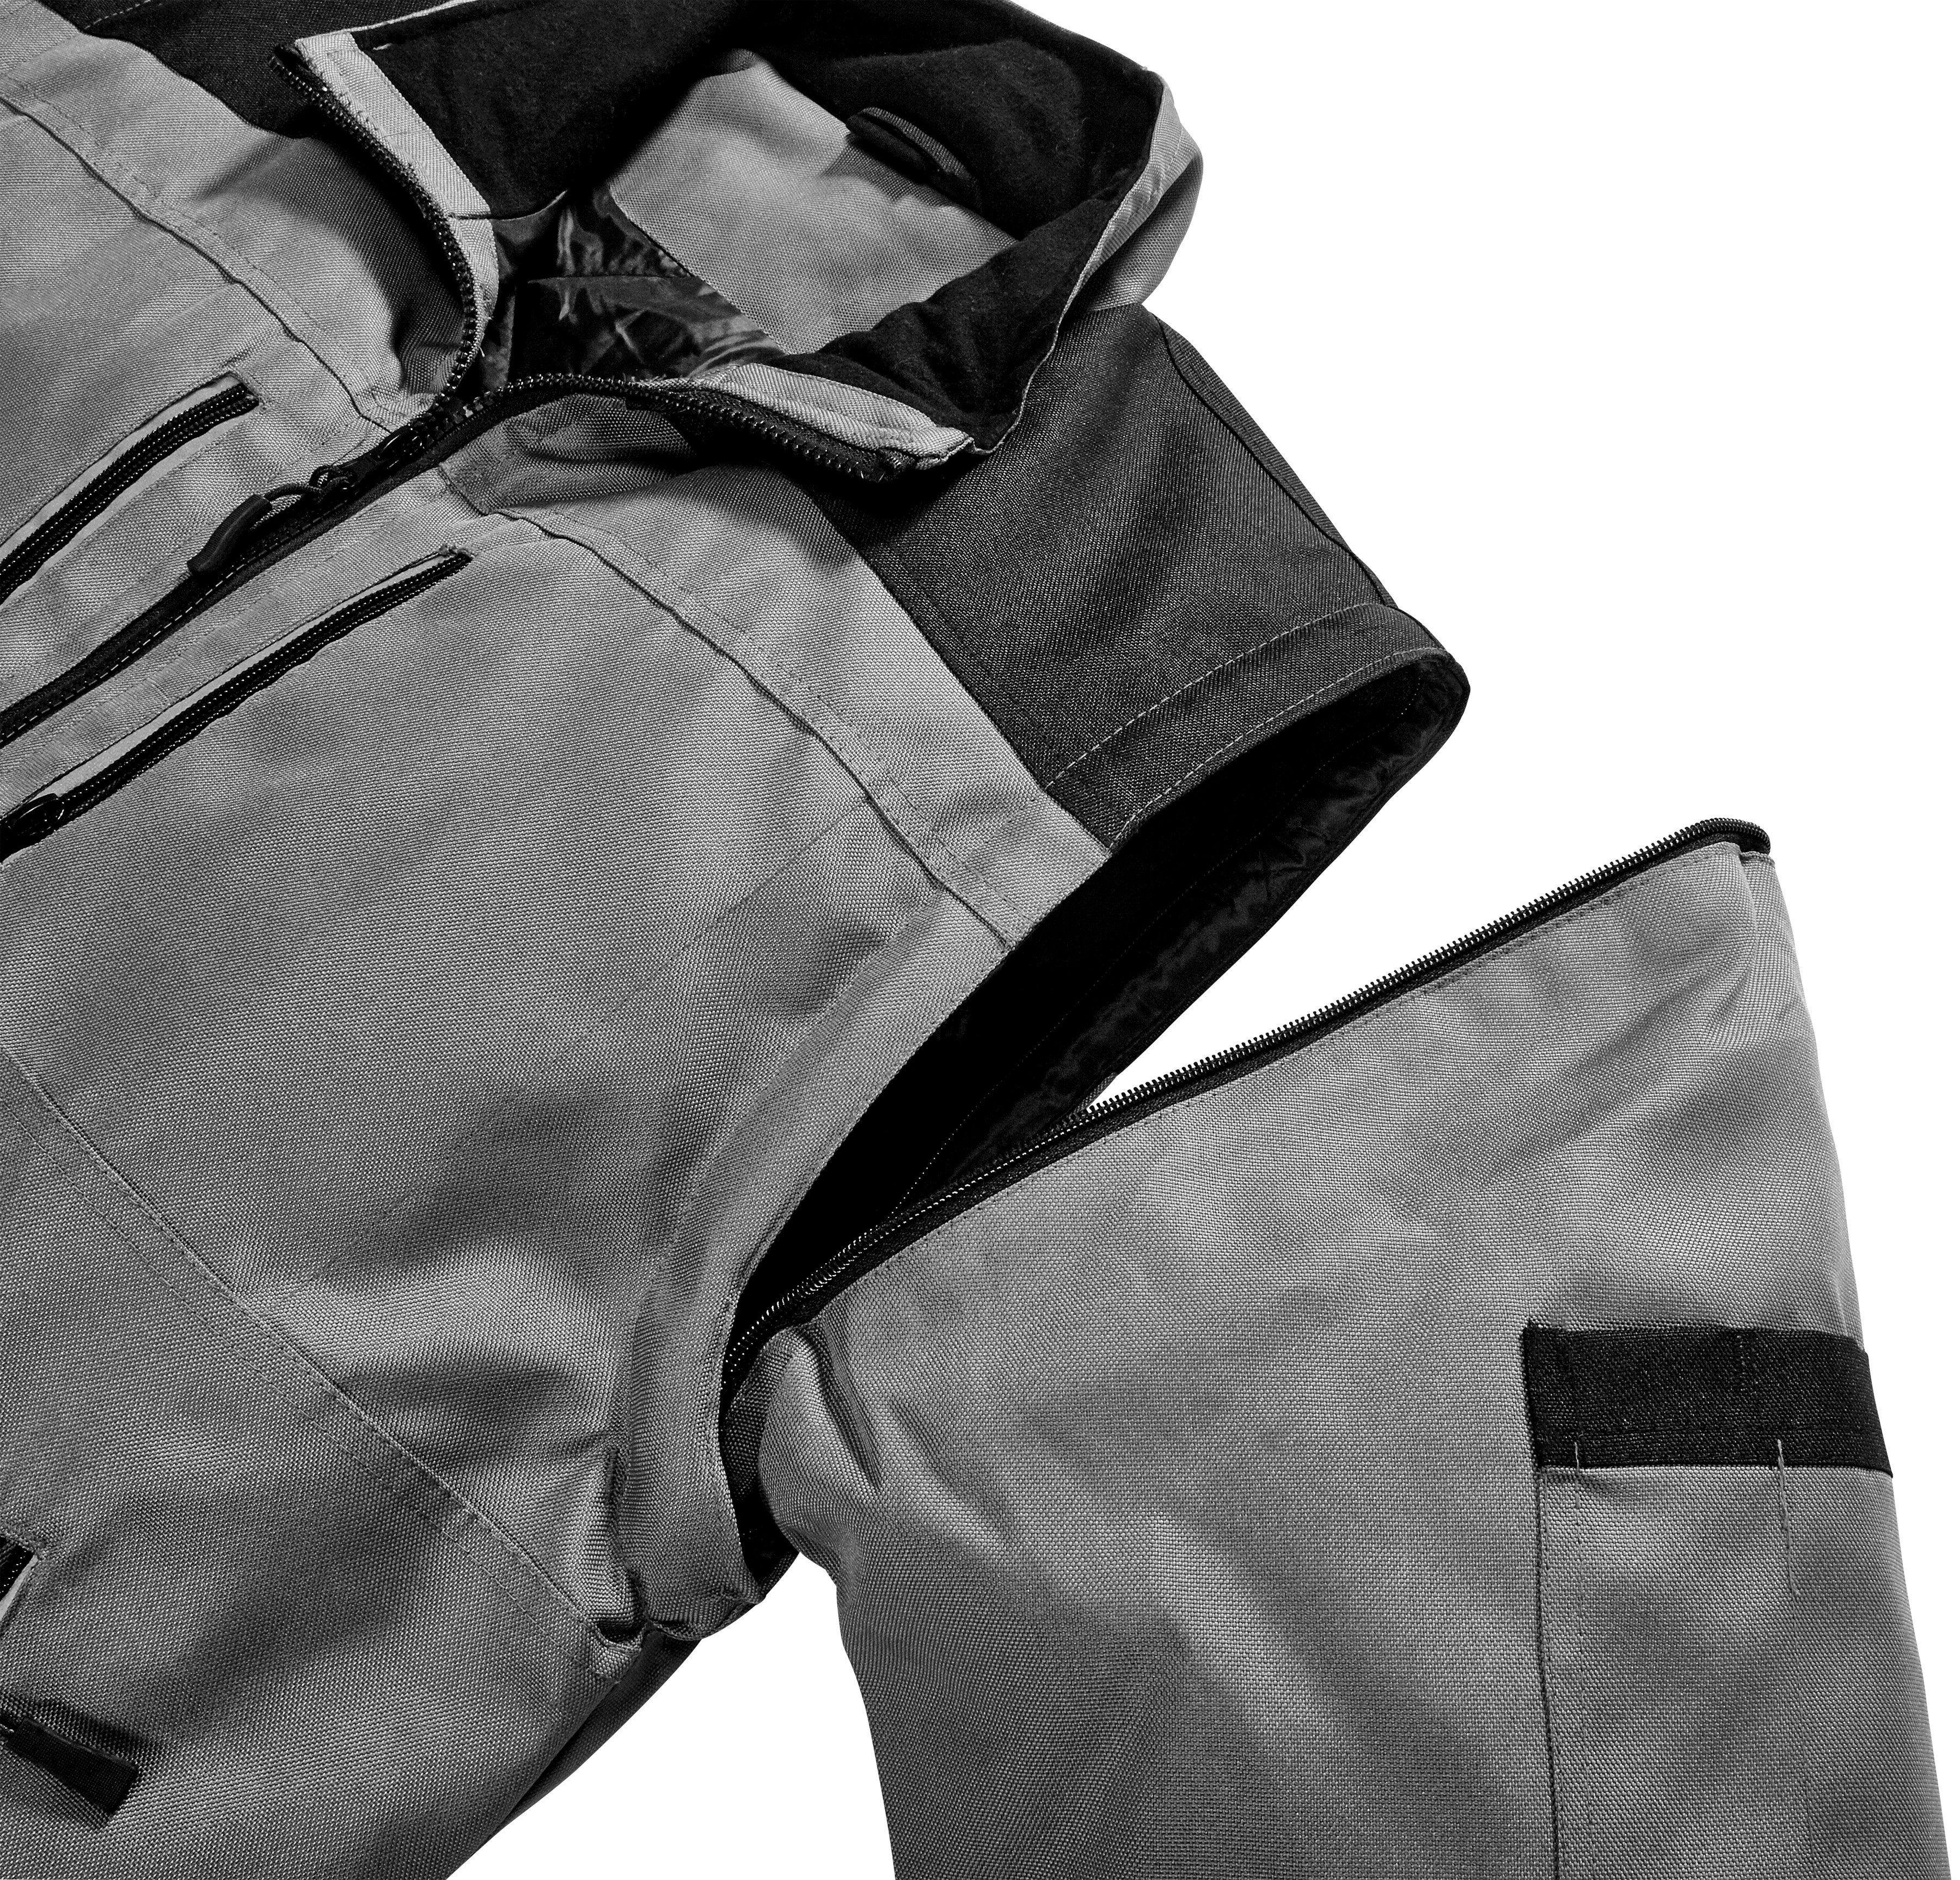 Arbeitsjacke Reflexelemente Extreme safety& more grau-schwarz